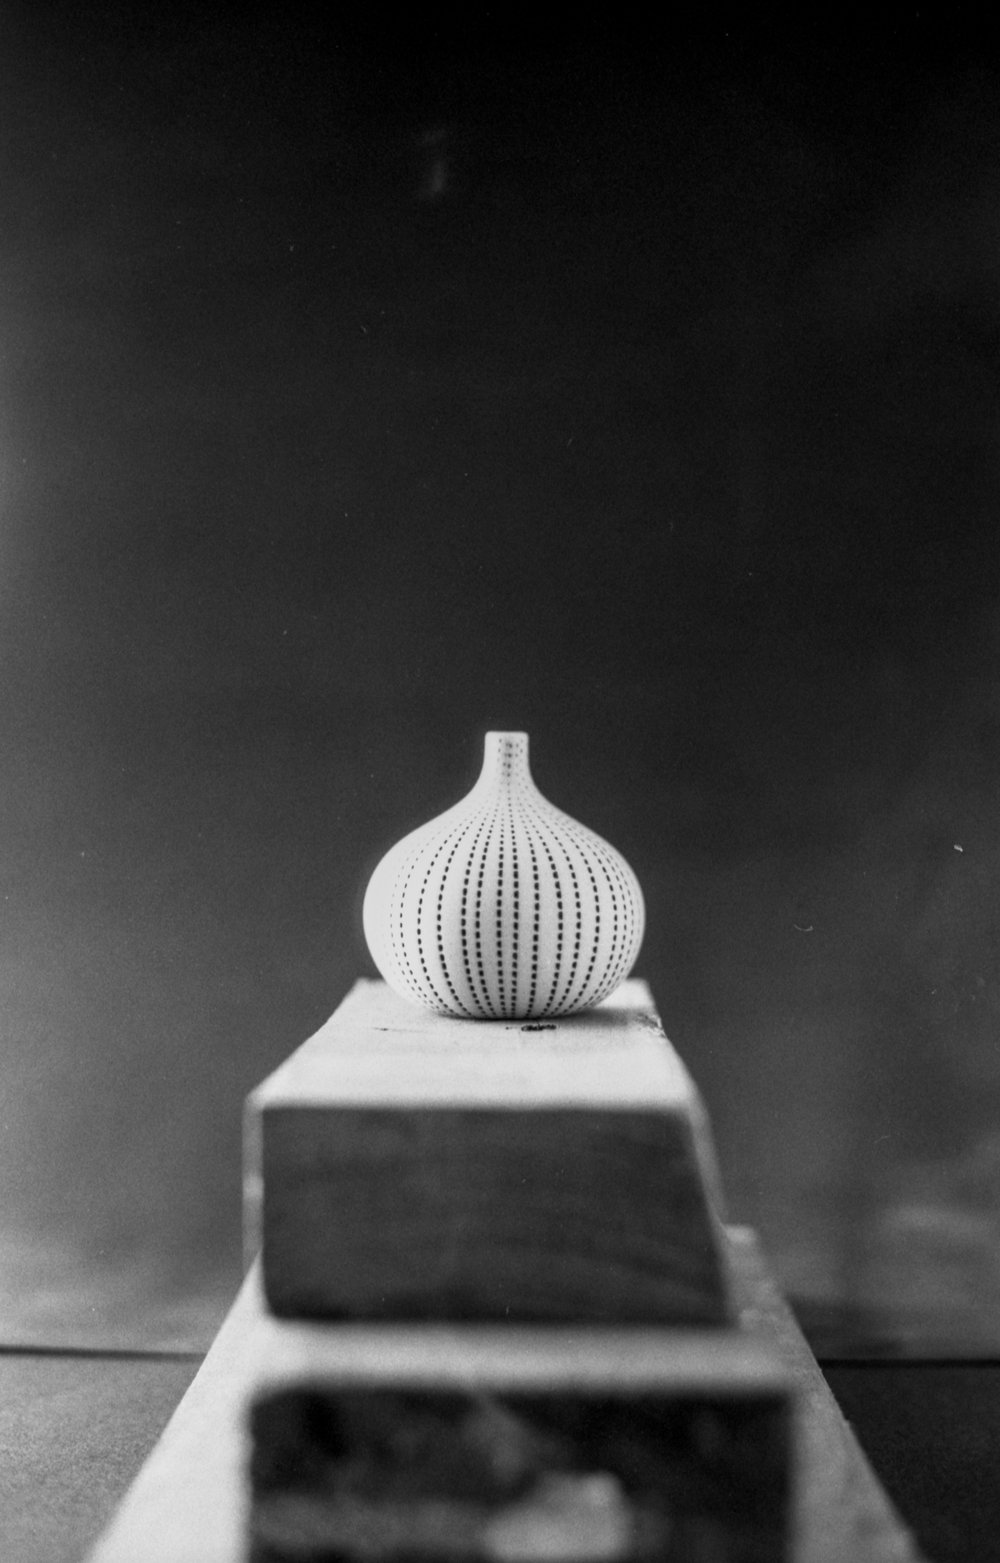 Turkish Flower Vase. Roll 1, Frame 35, F2.8, 1/60. February 4, 2024.